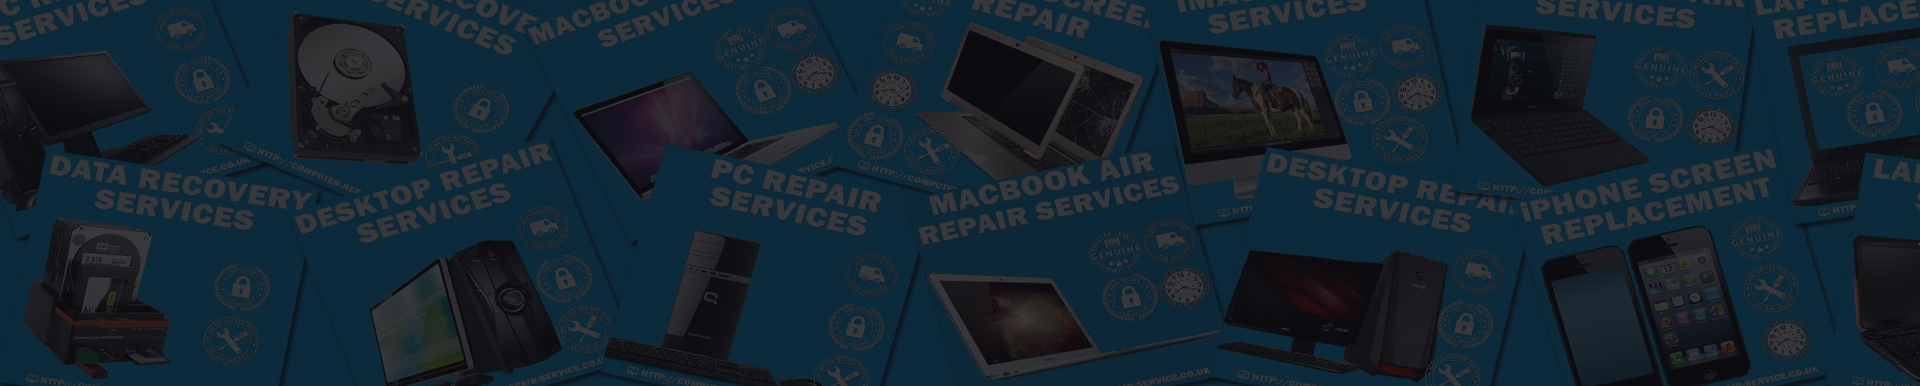 laptop repair Image